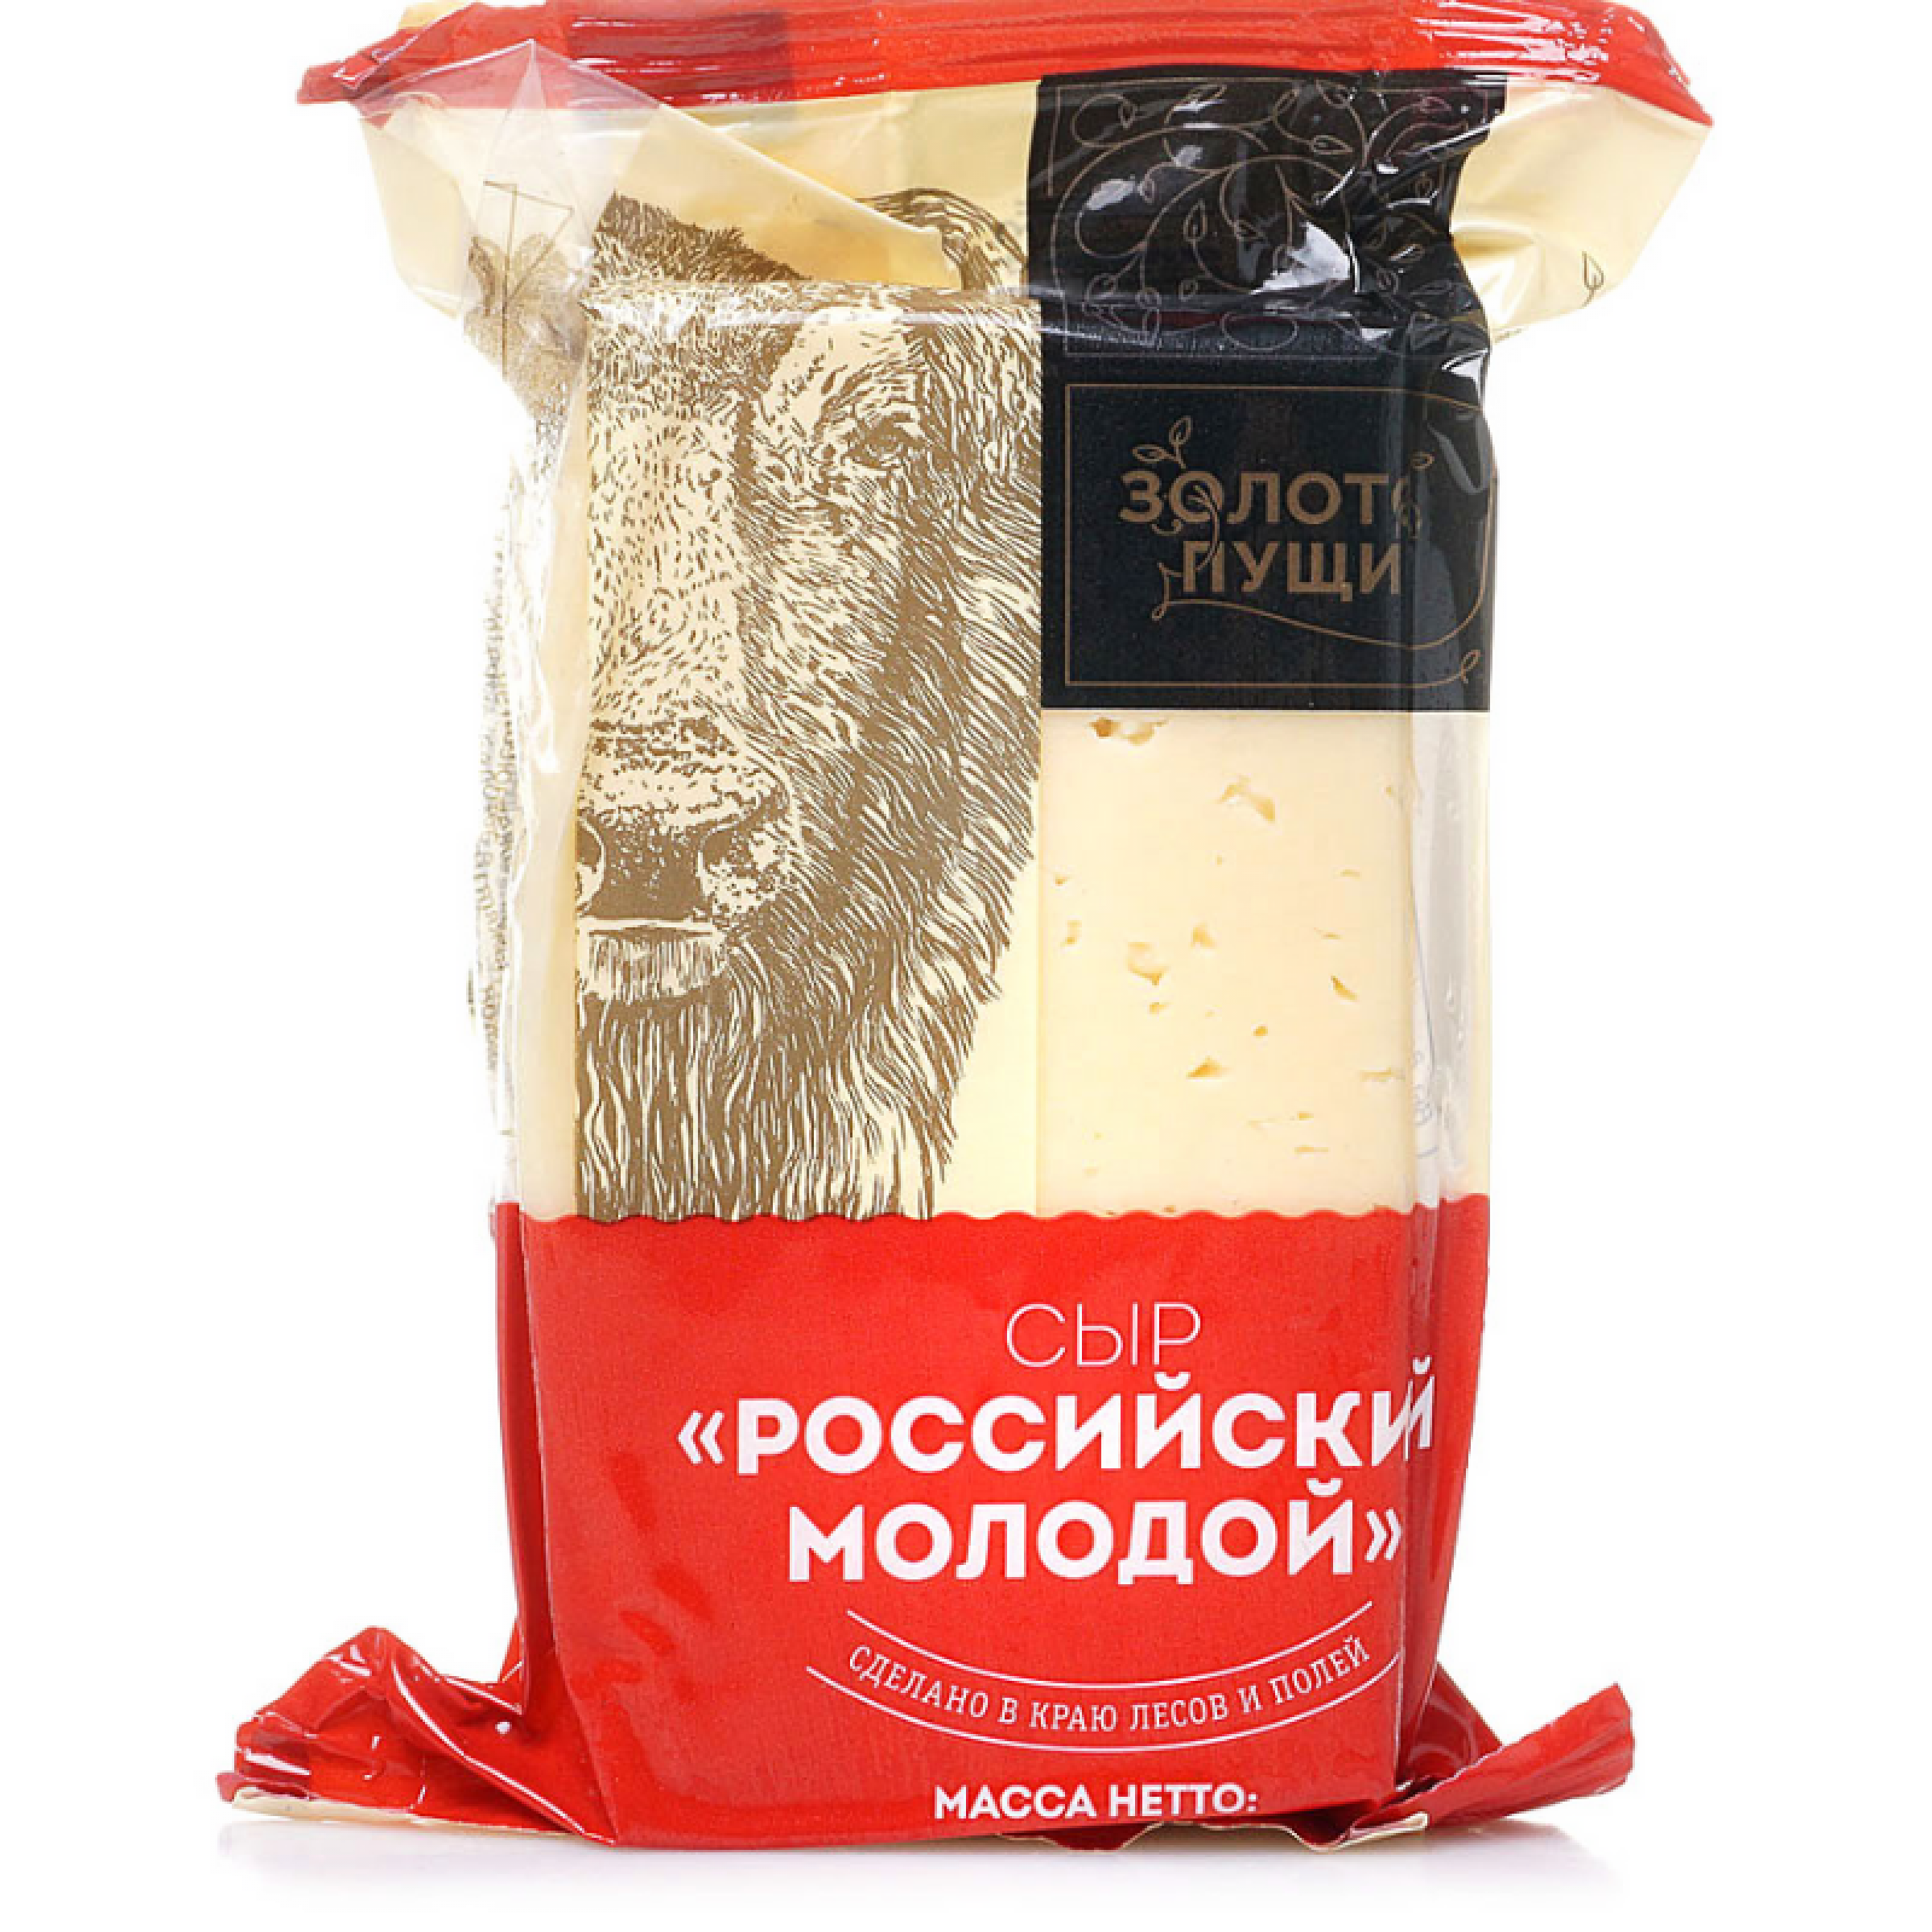 Сыр Российский молодой 50% Золото Пущи, 200 гр